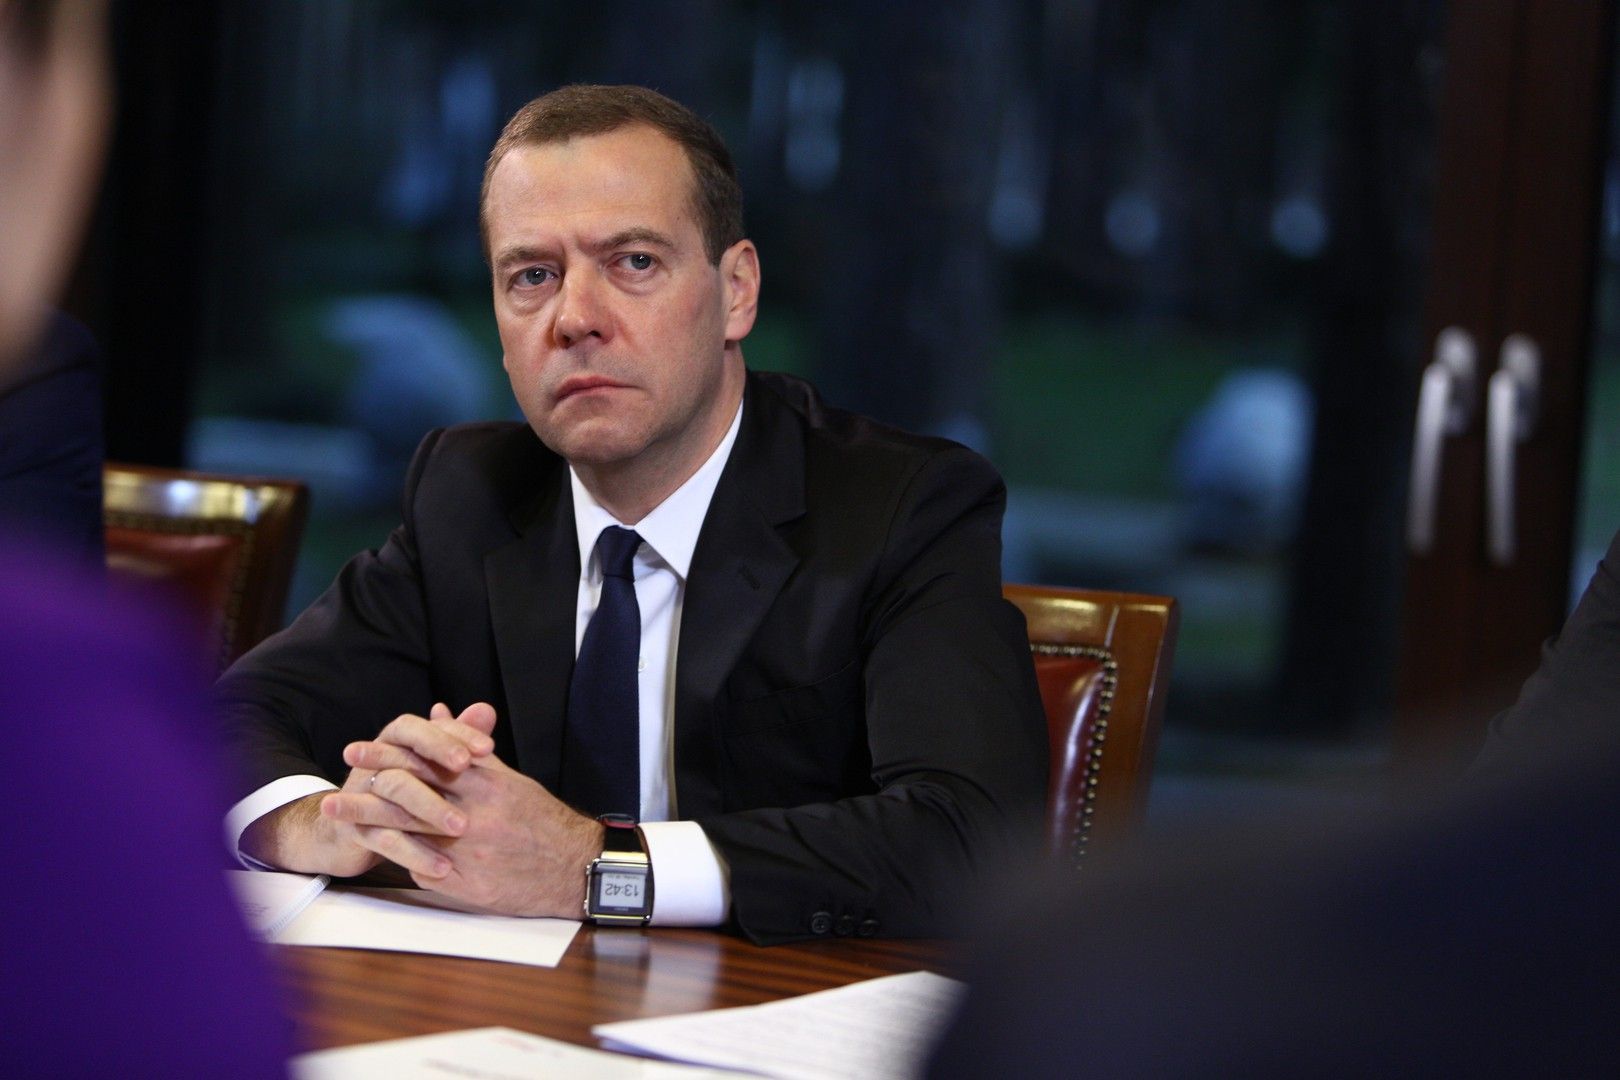 Европа хочет дефолта России, а не мира на Украине, заявил Медведев